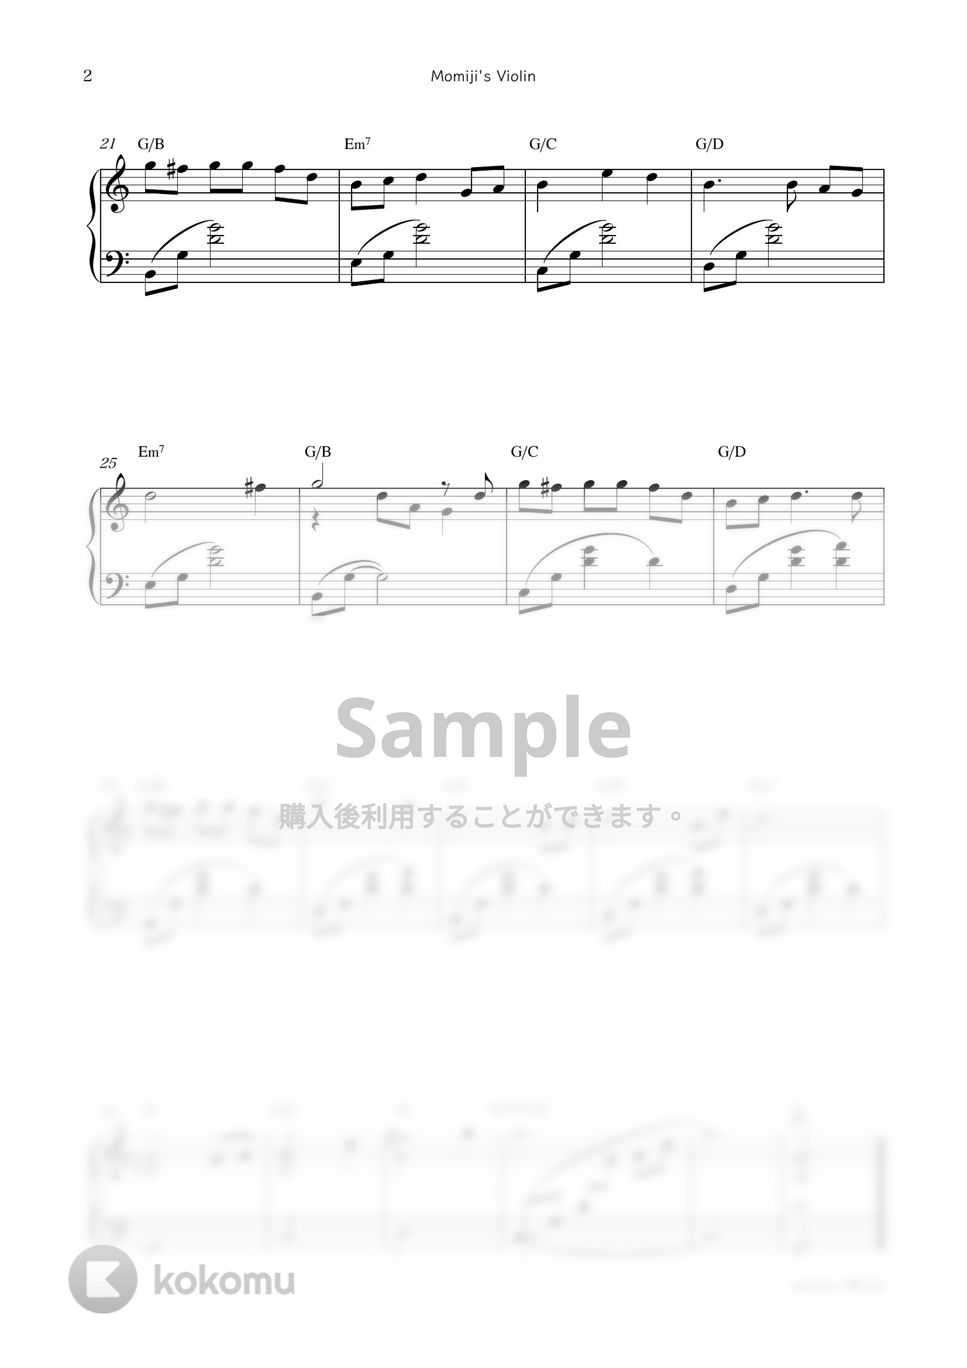 アニメ『フルーツバスケット』OST - Momiji's Violin by sammy